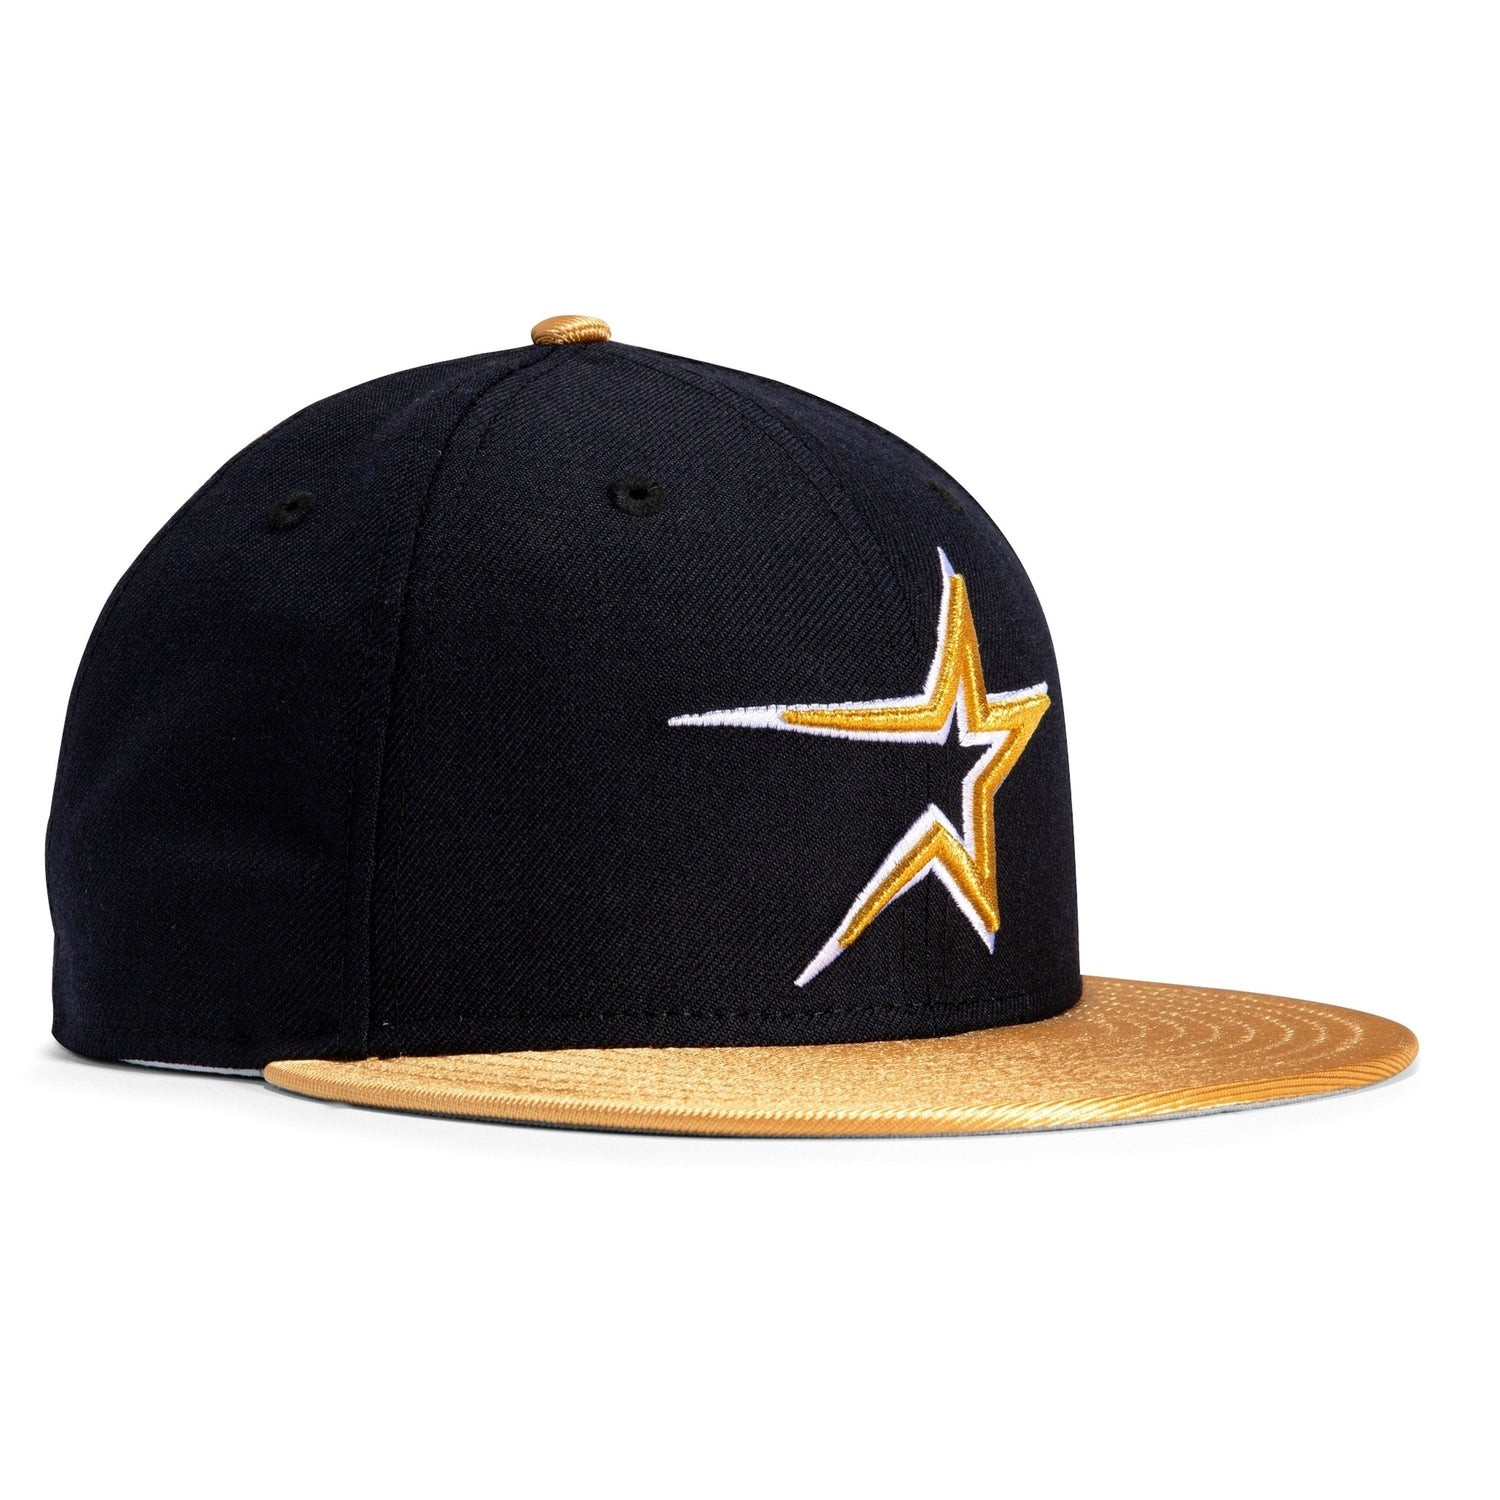 New Era 59FIFTY Retro On-Field Houston Astros Game Hat - Navy, Metallic Gold Navy/Metallic Gold / 8